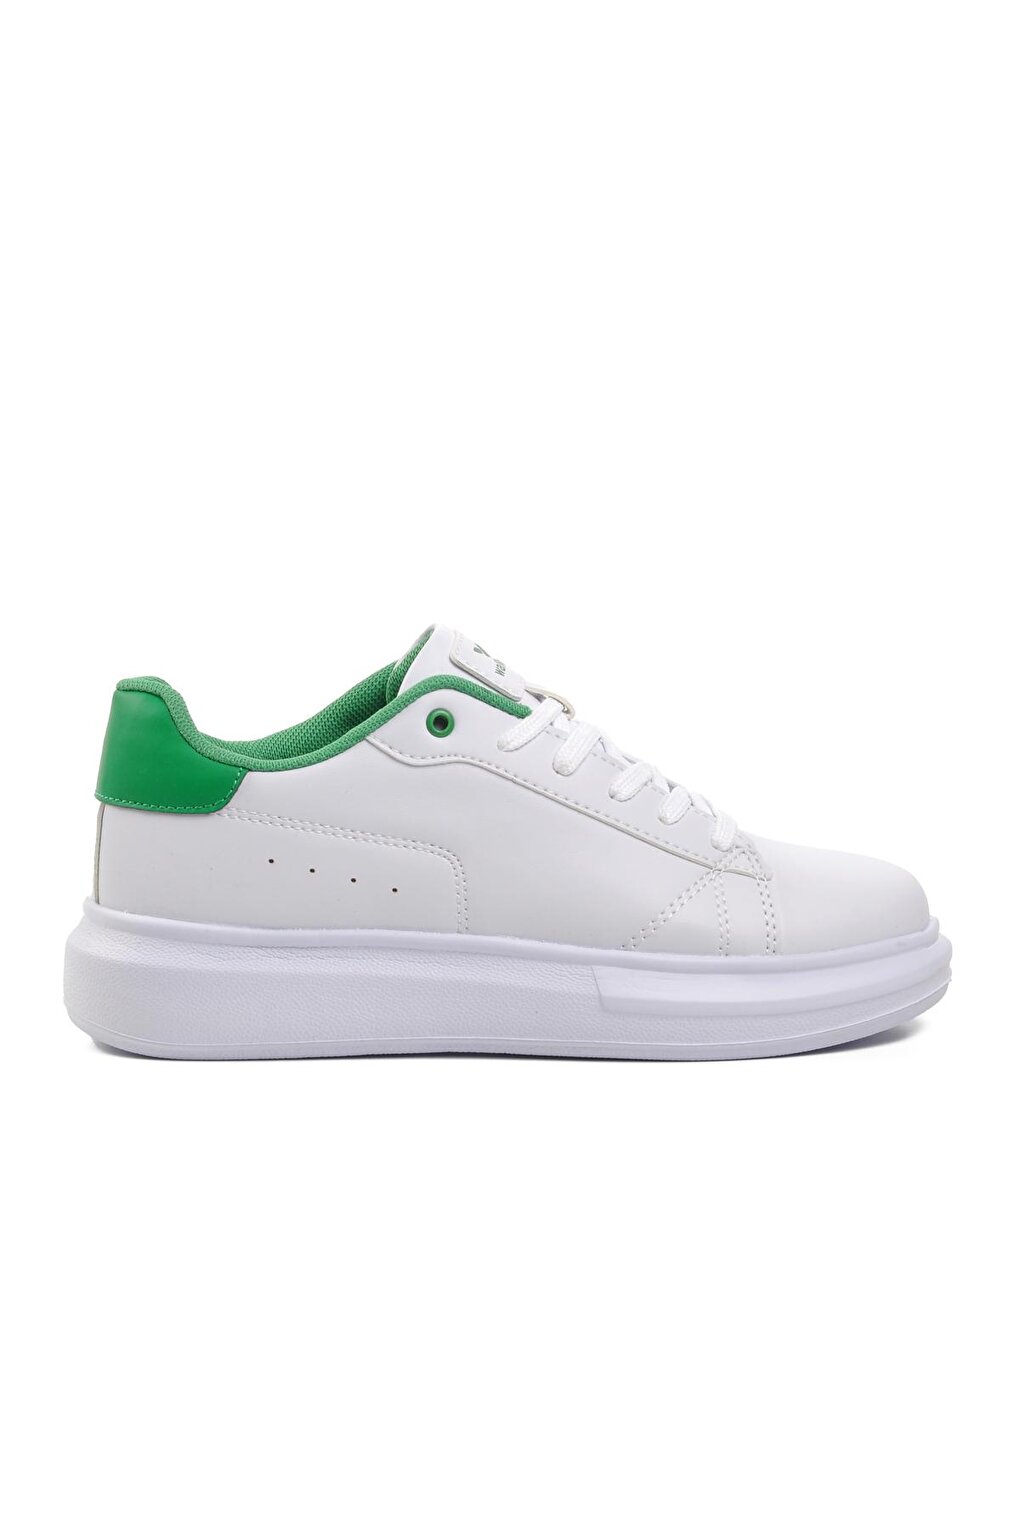 Женская спортивная обувь Nadia бело-зеленая Walkway